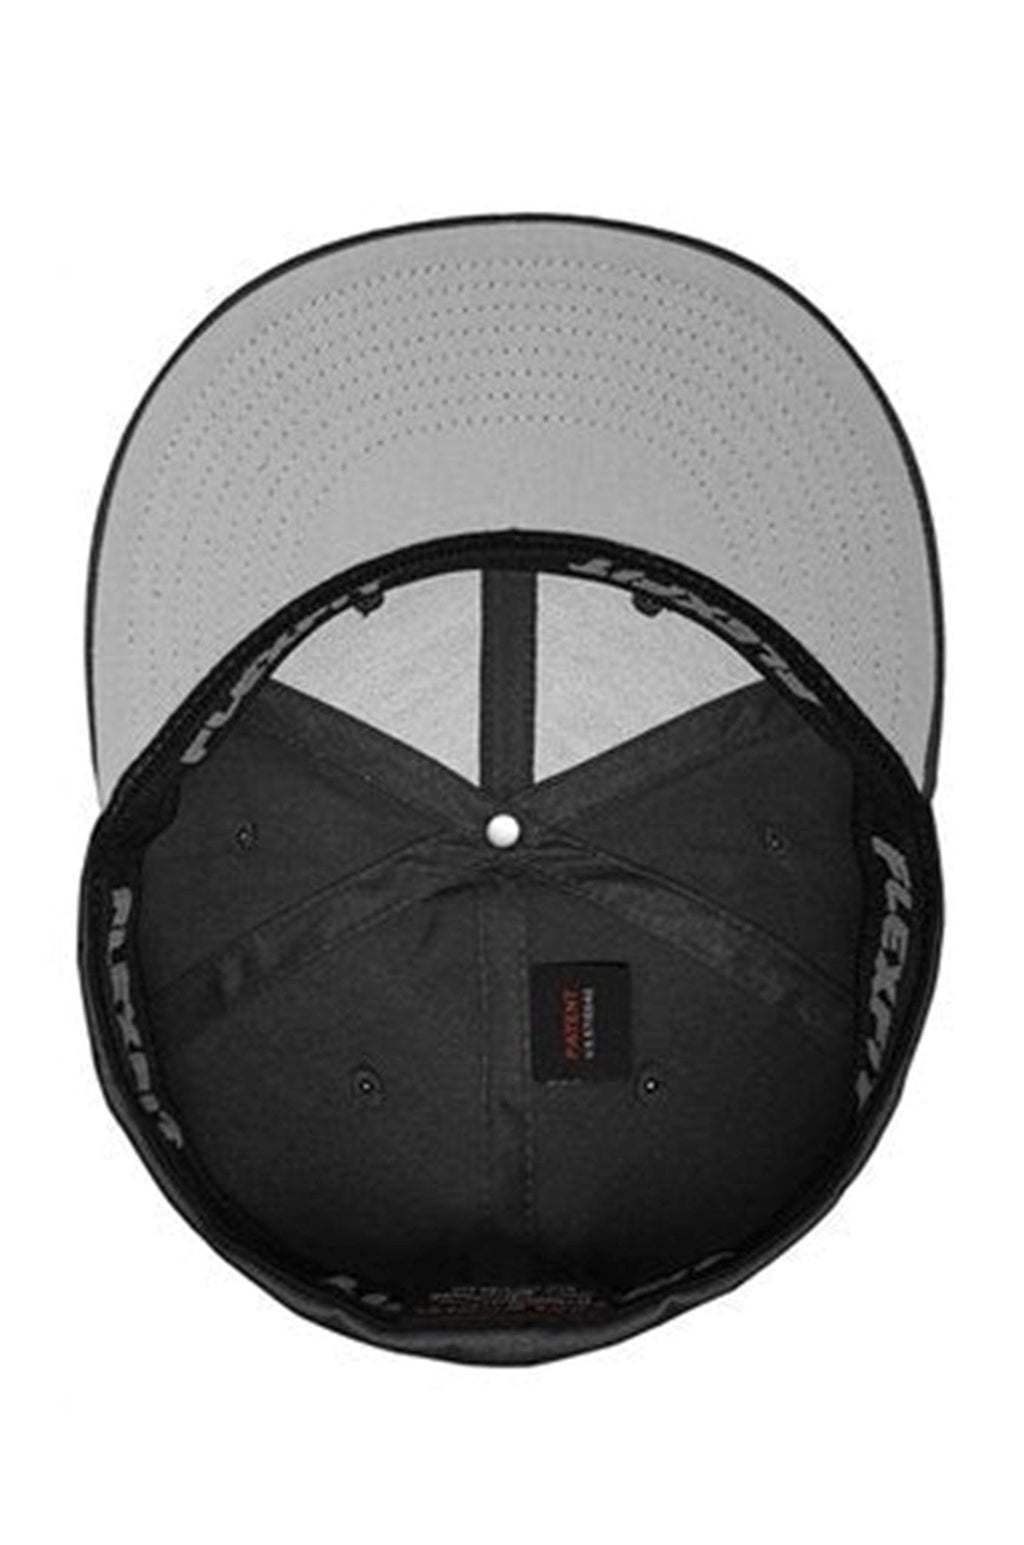 Originálna baseballová čiapka FlexFit - biela